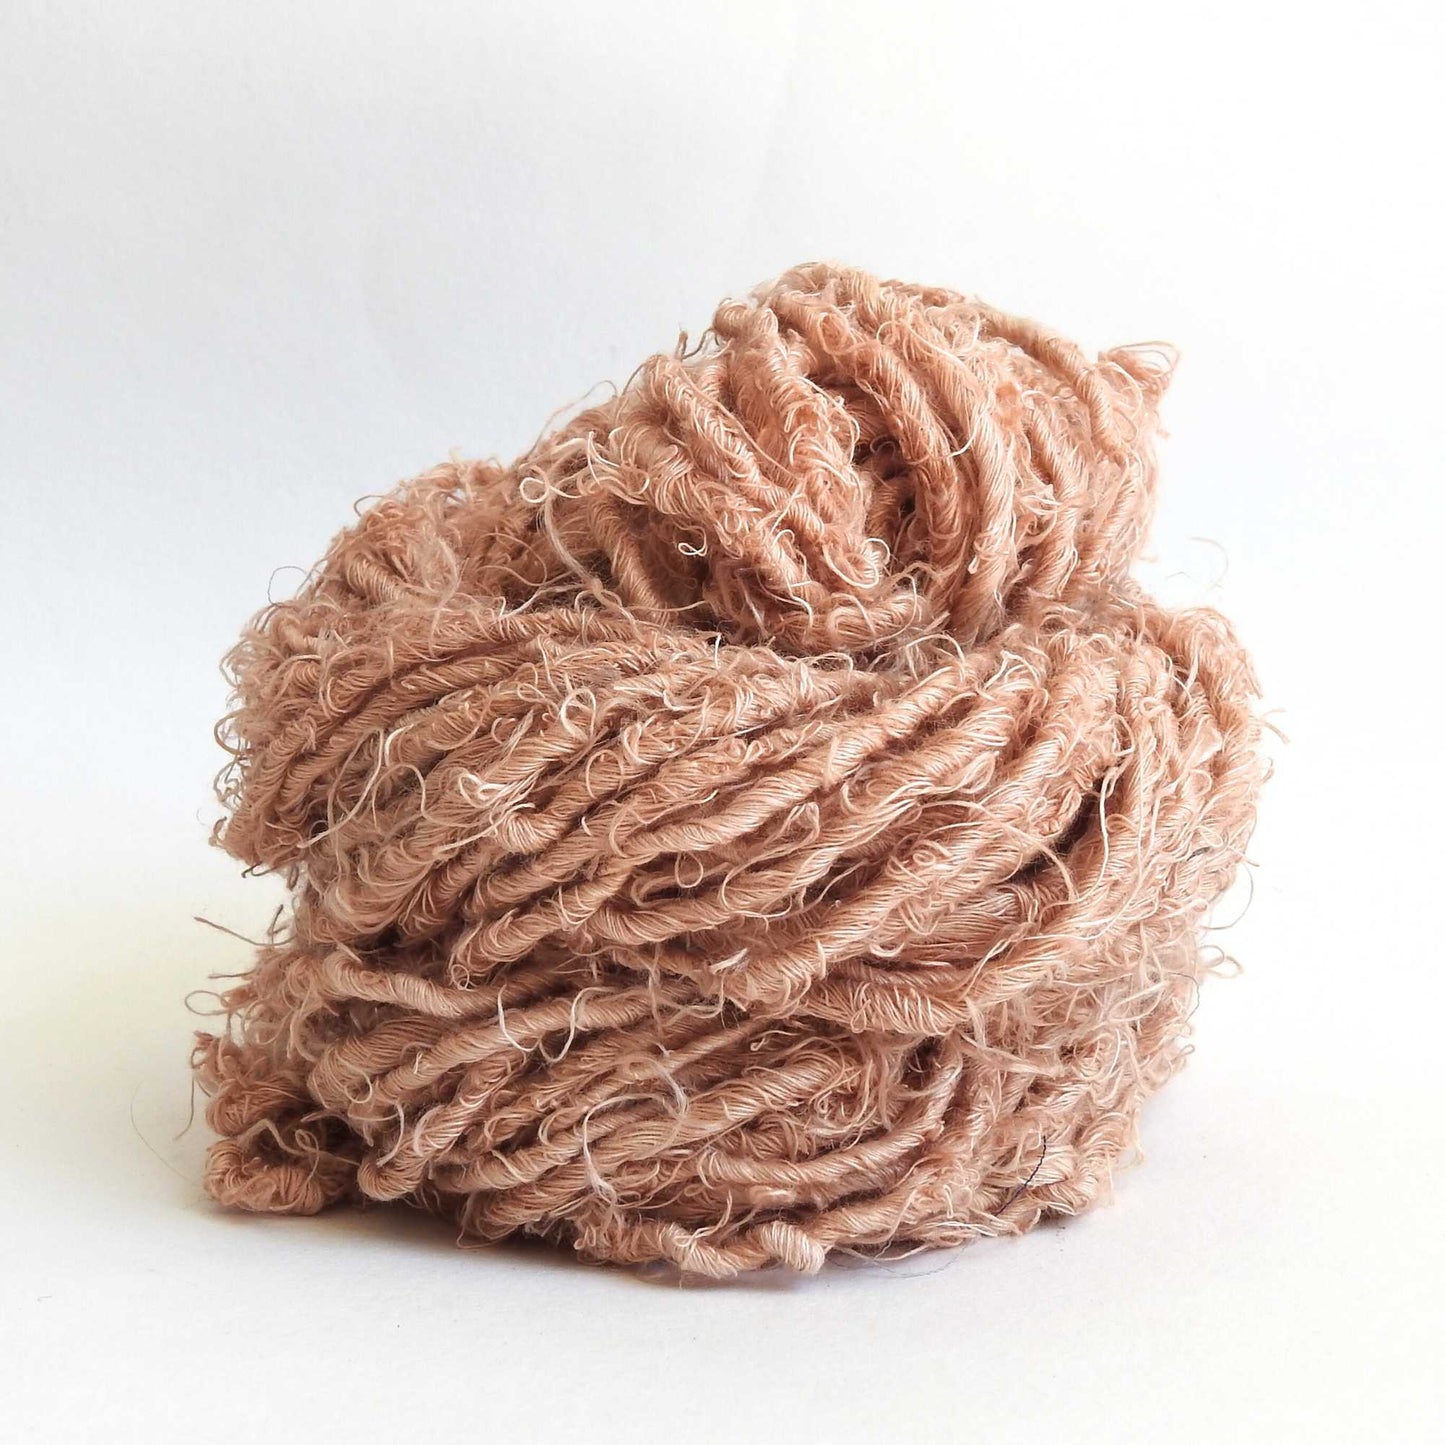 Recycled Yarn » Refibers Tekstil